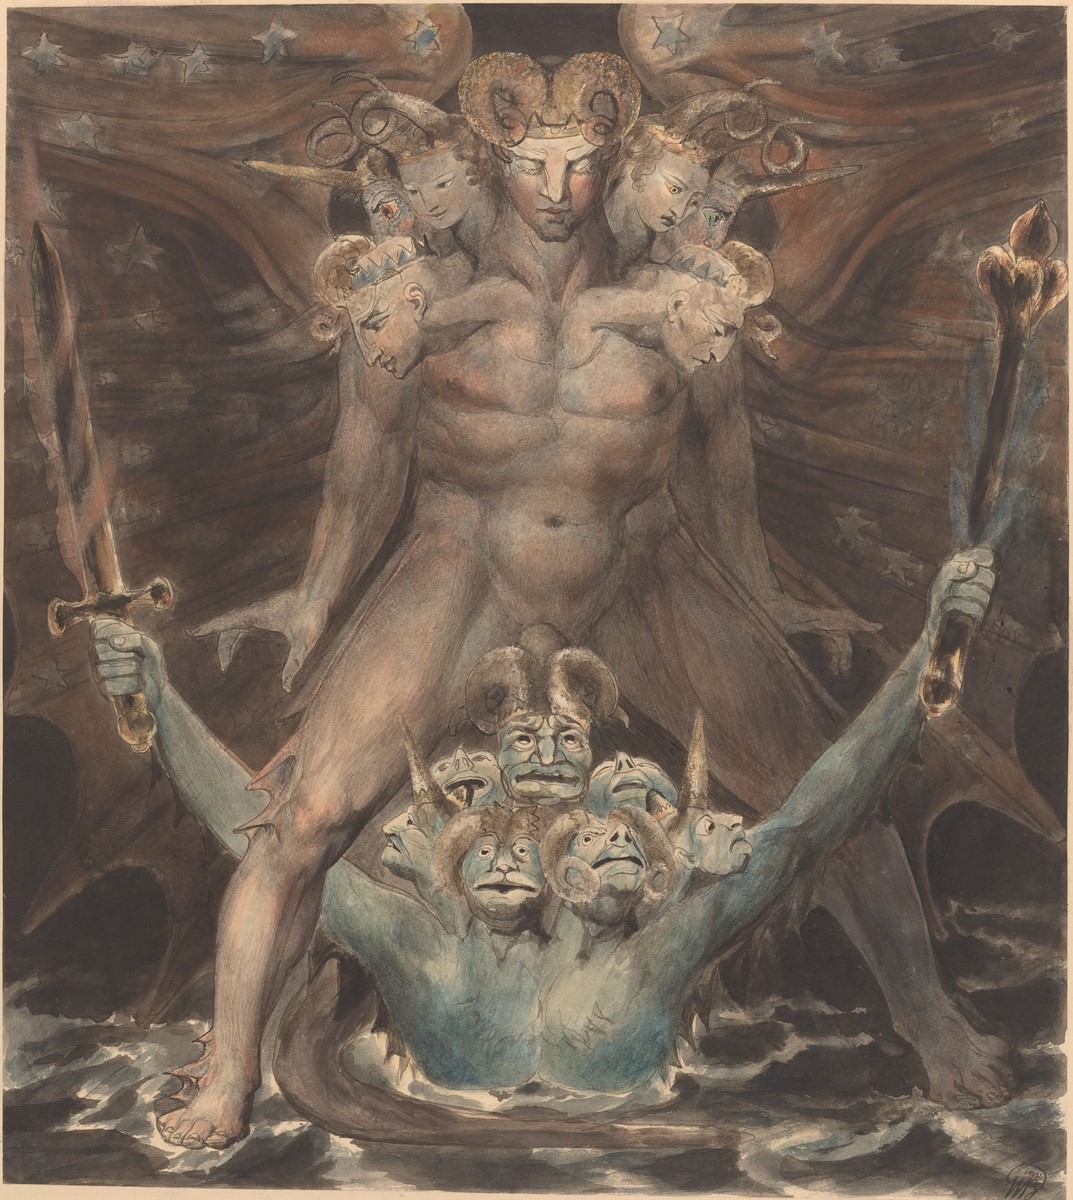 הדרקון האדום הגדול והחיה מהים, 1805. ויליאם בלייק. הגלרייה הלאומית לאומנות, וושינגטון. אוסף רוזנוולד.